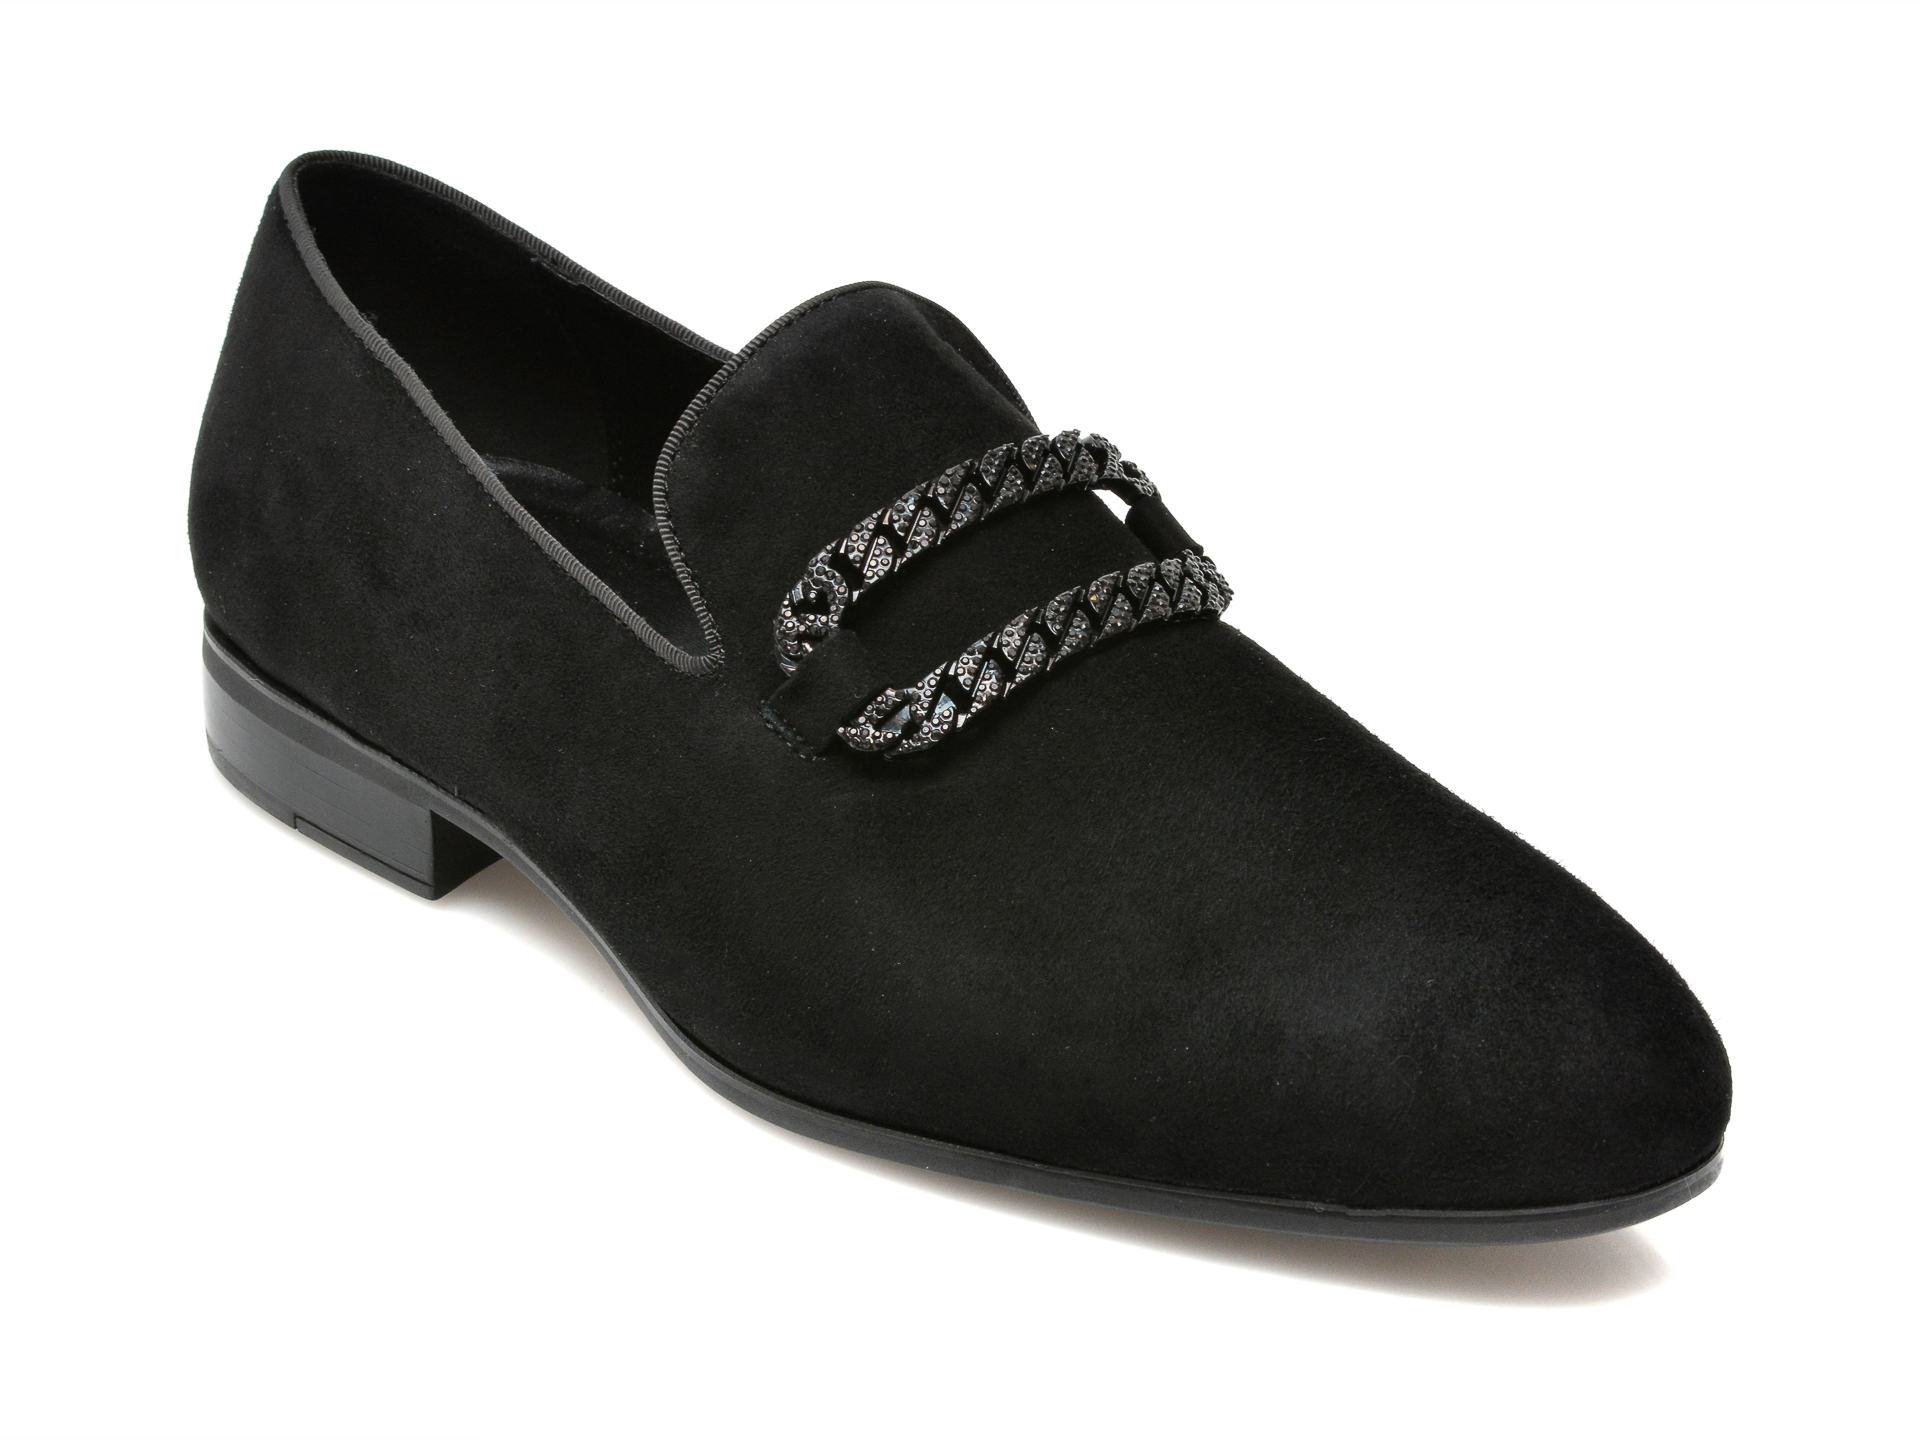 Pantofi ALDO negri, CONNERY001, din piele intoarsa Aldo